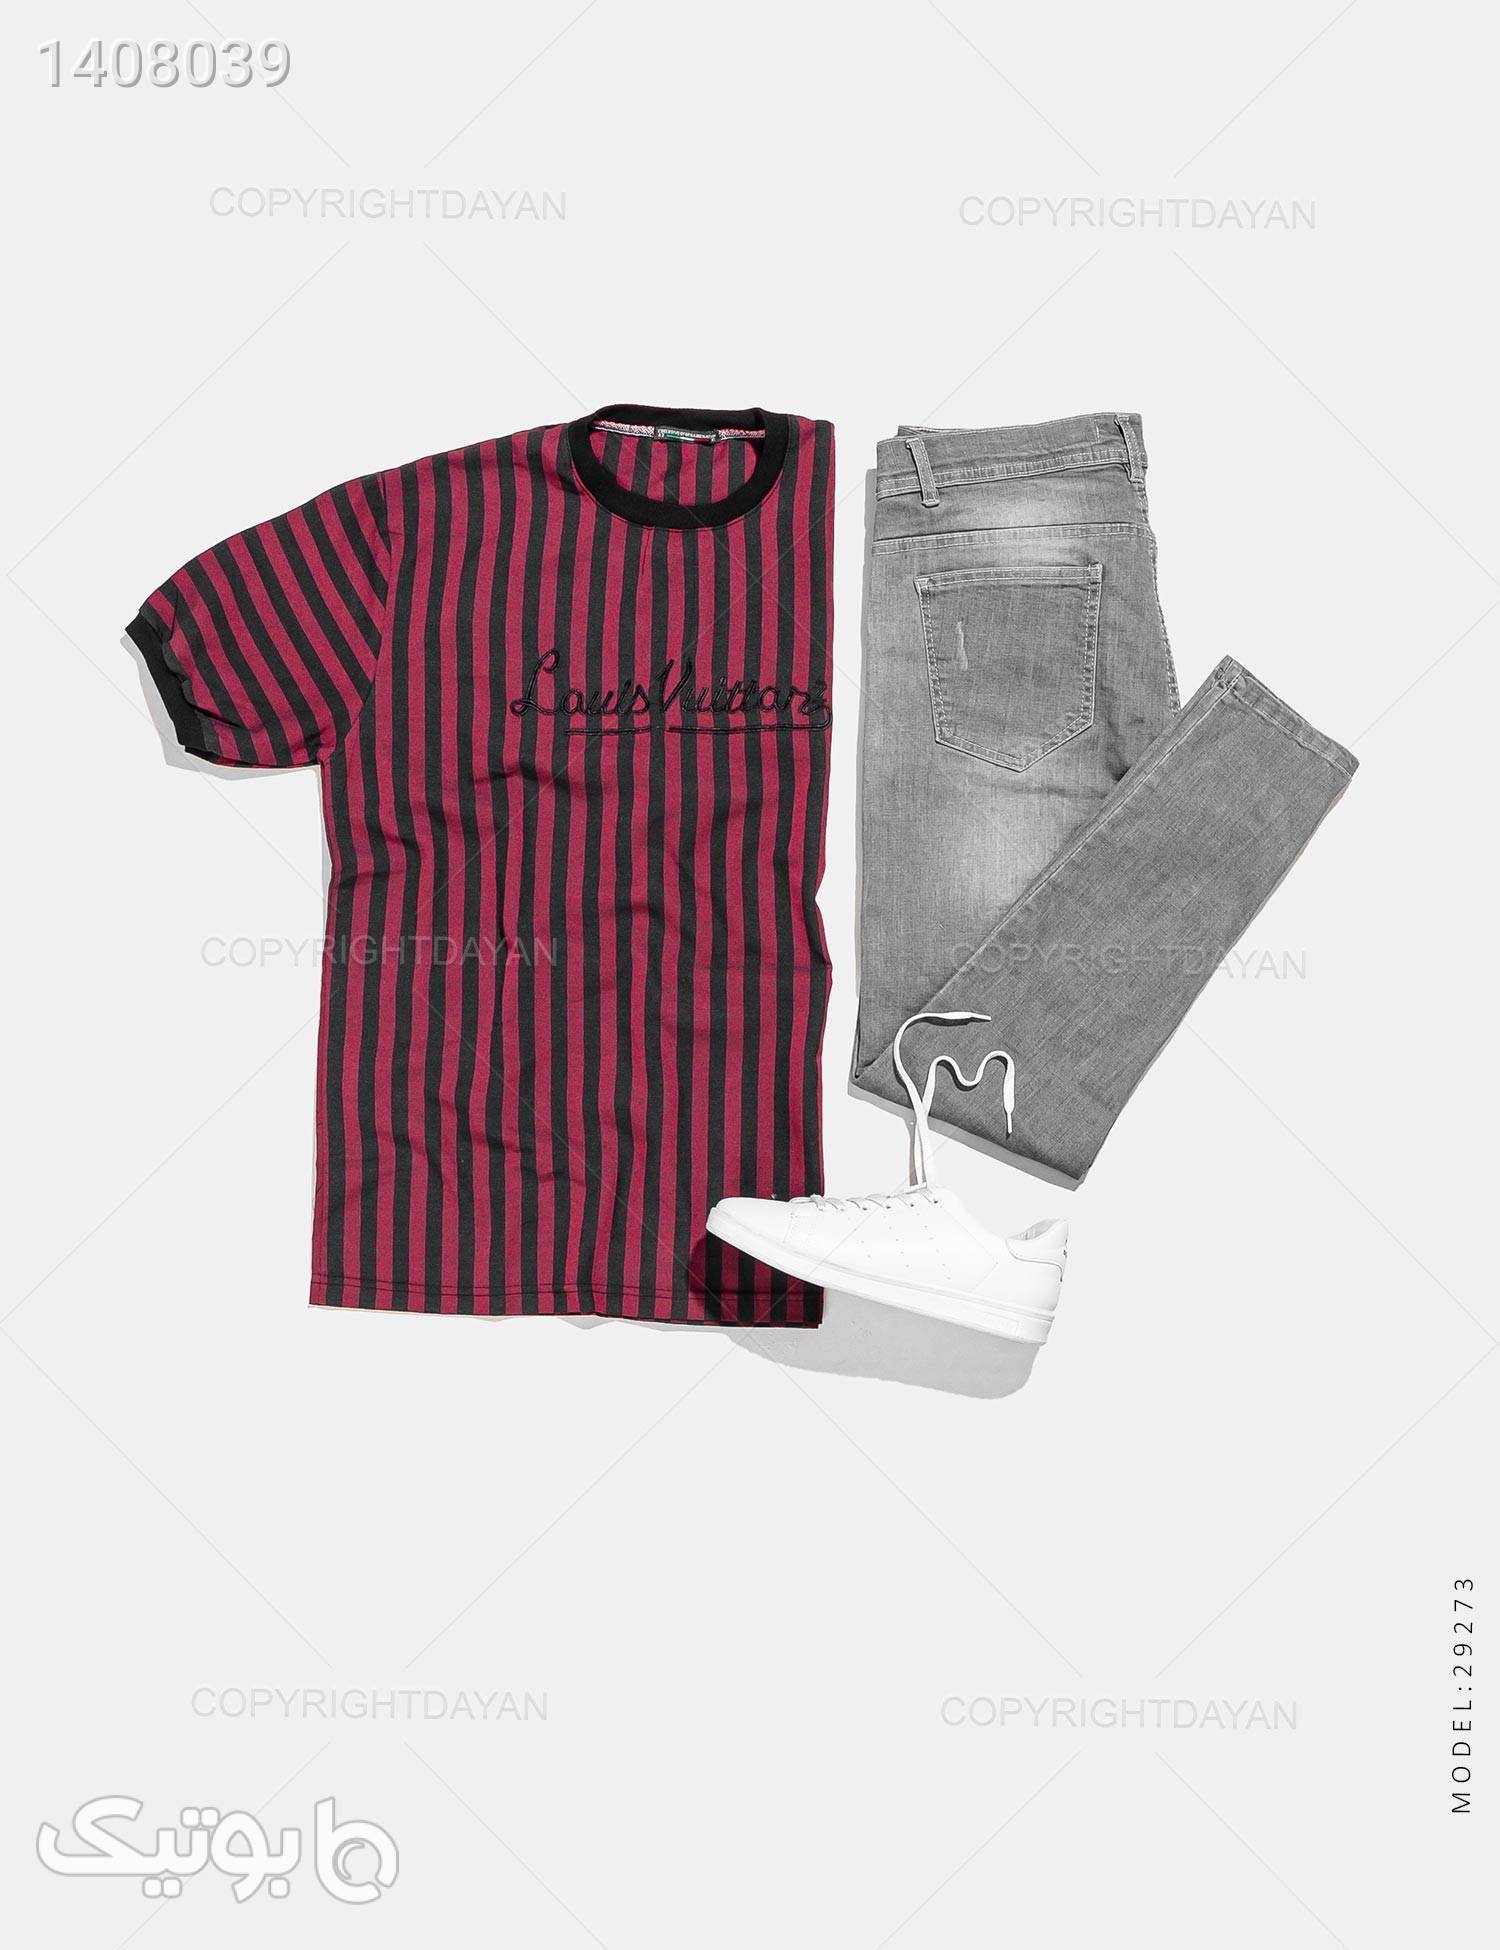 تیشرت مردانه Louis Vuitton مدل 29273 زرشکی تی شرت و پولو شرت مردانه